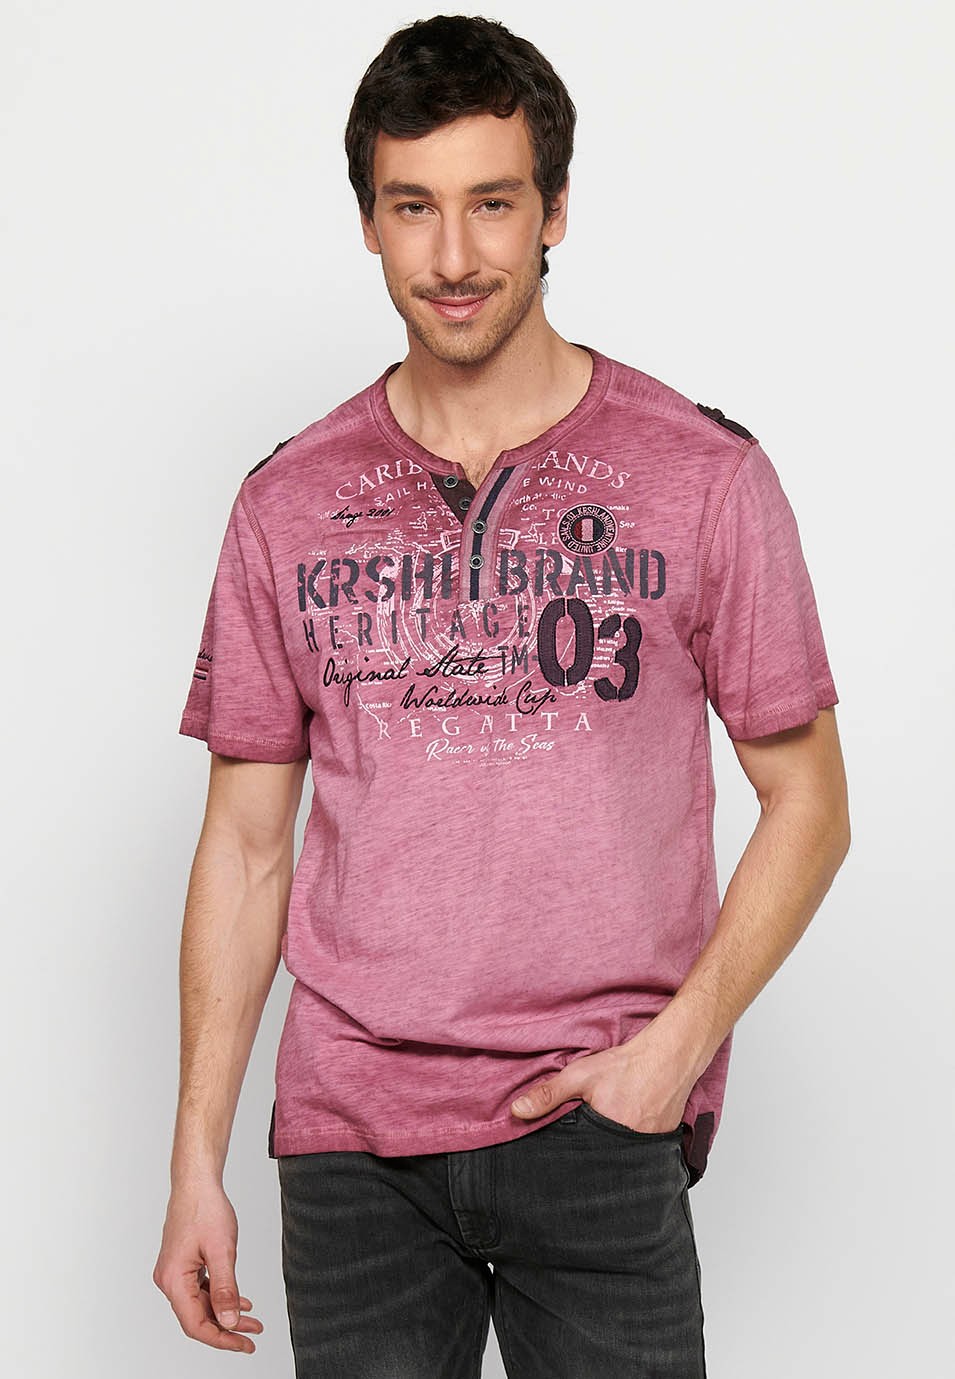 Kurzärmliges Herren-T-Shirt aus Baumwolle mit Rundhalsausschnitt, geknöpfter Öffnung und kastanienbraunem Detail auf der Vorderseite